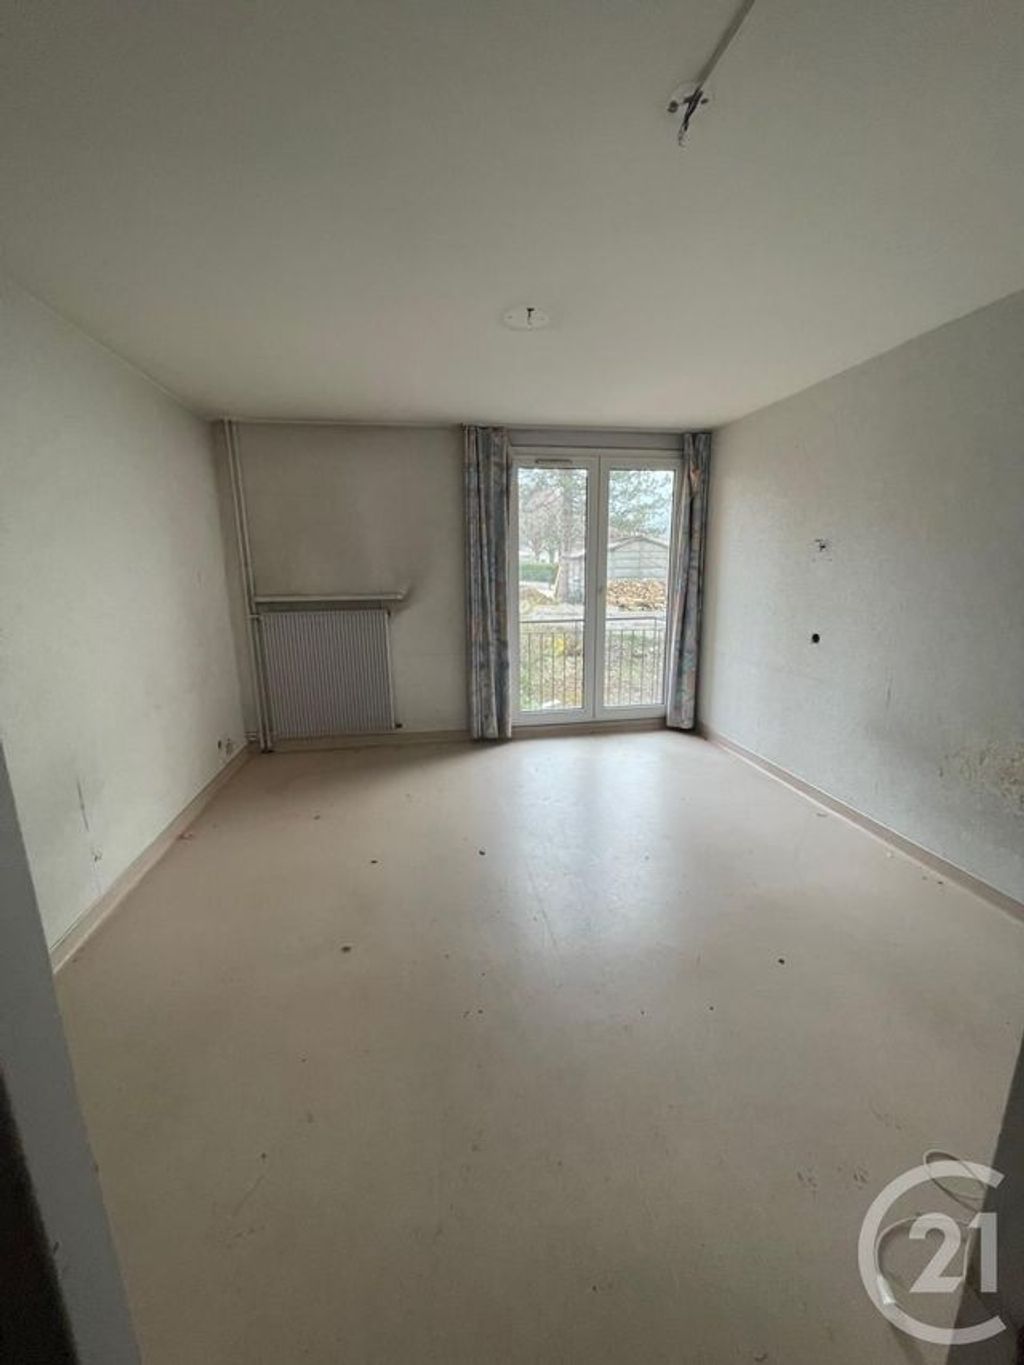 Achat appartement 9 pièces 270 m² - Beaucourt